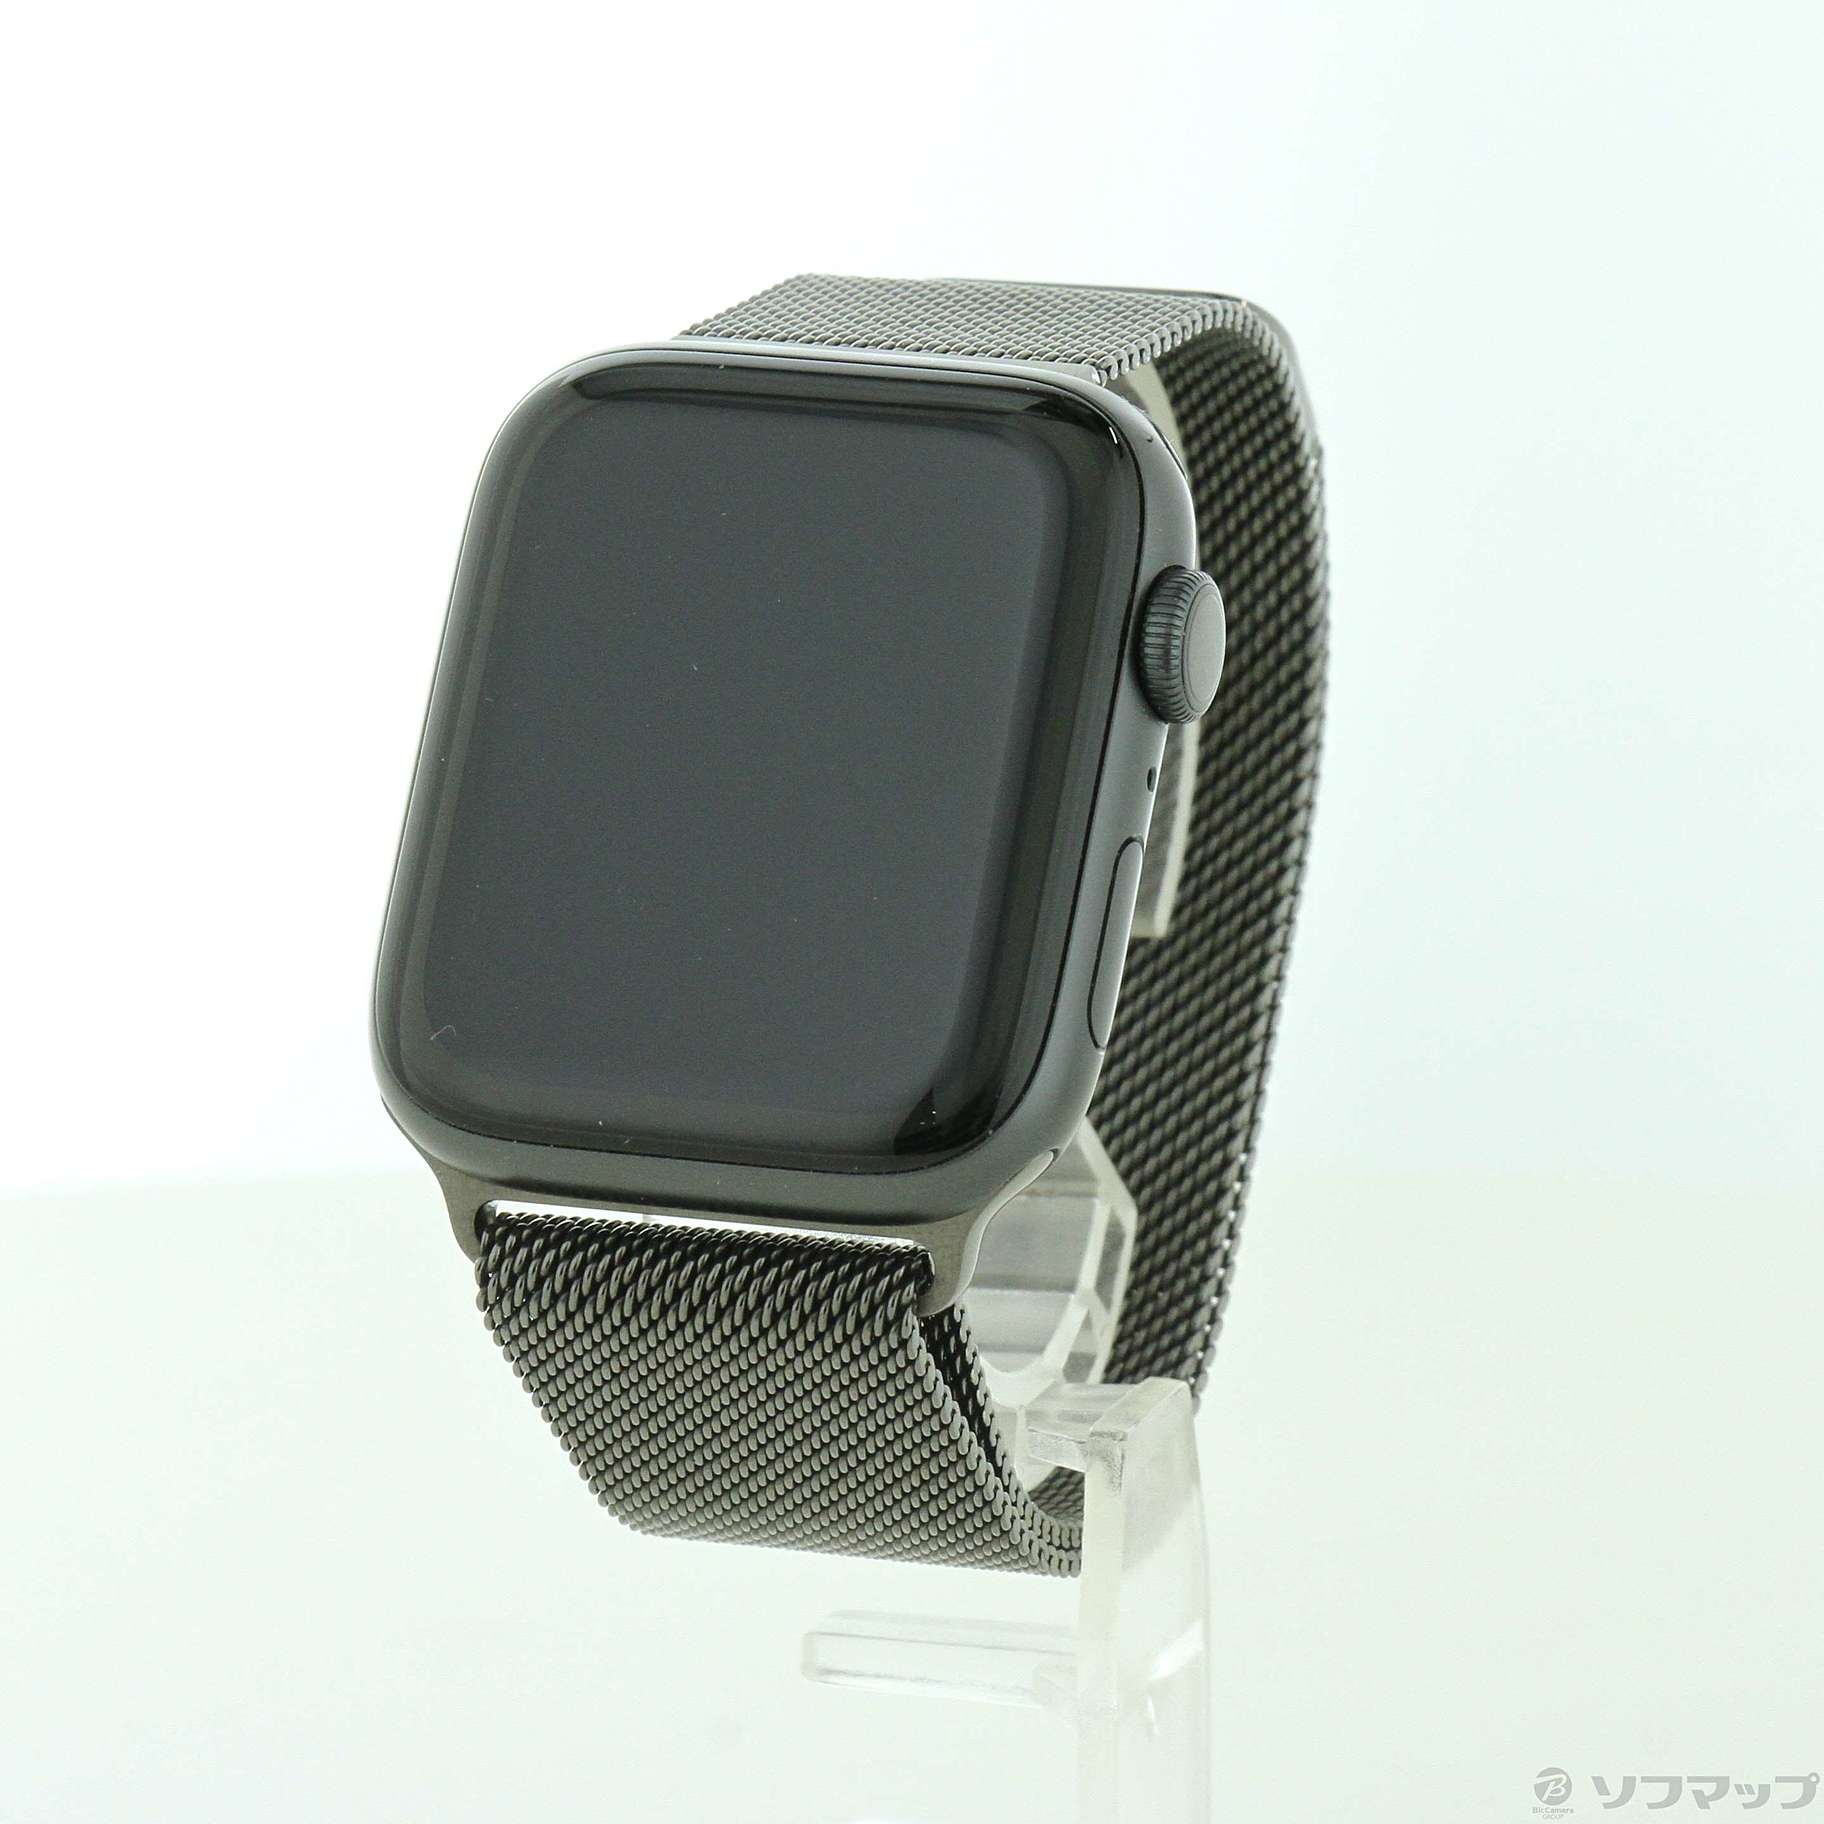 再入荷 〔〕Apple(アップル) Apple Watch Series 6 GPS 44mm スペース